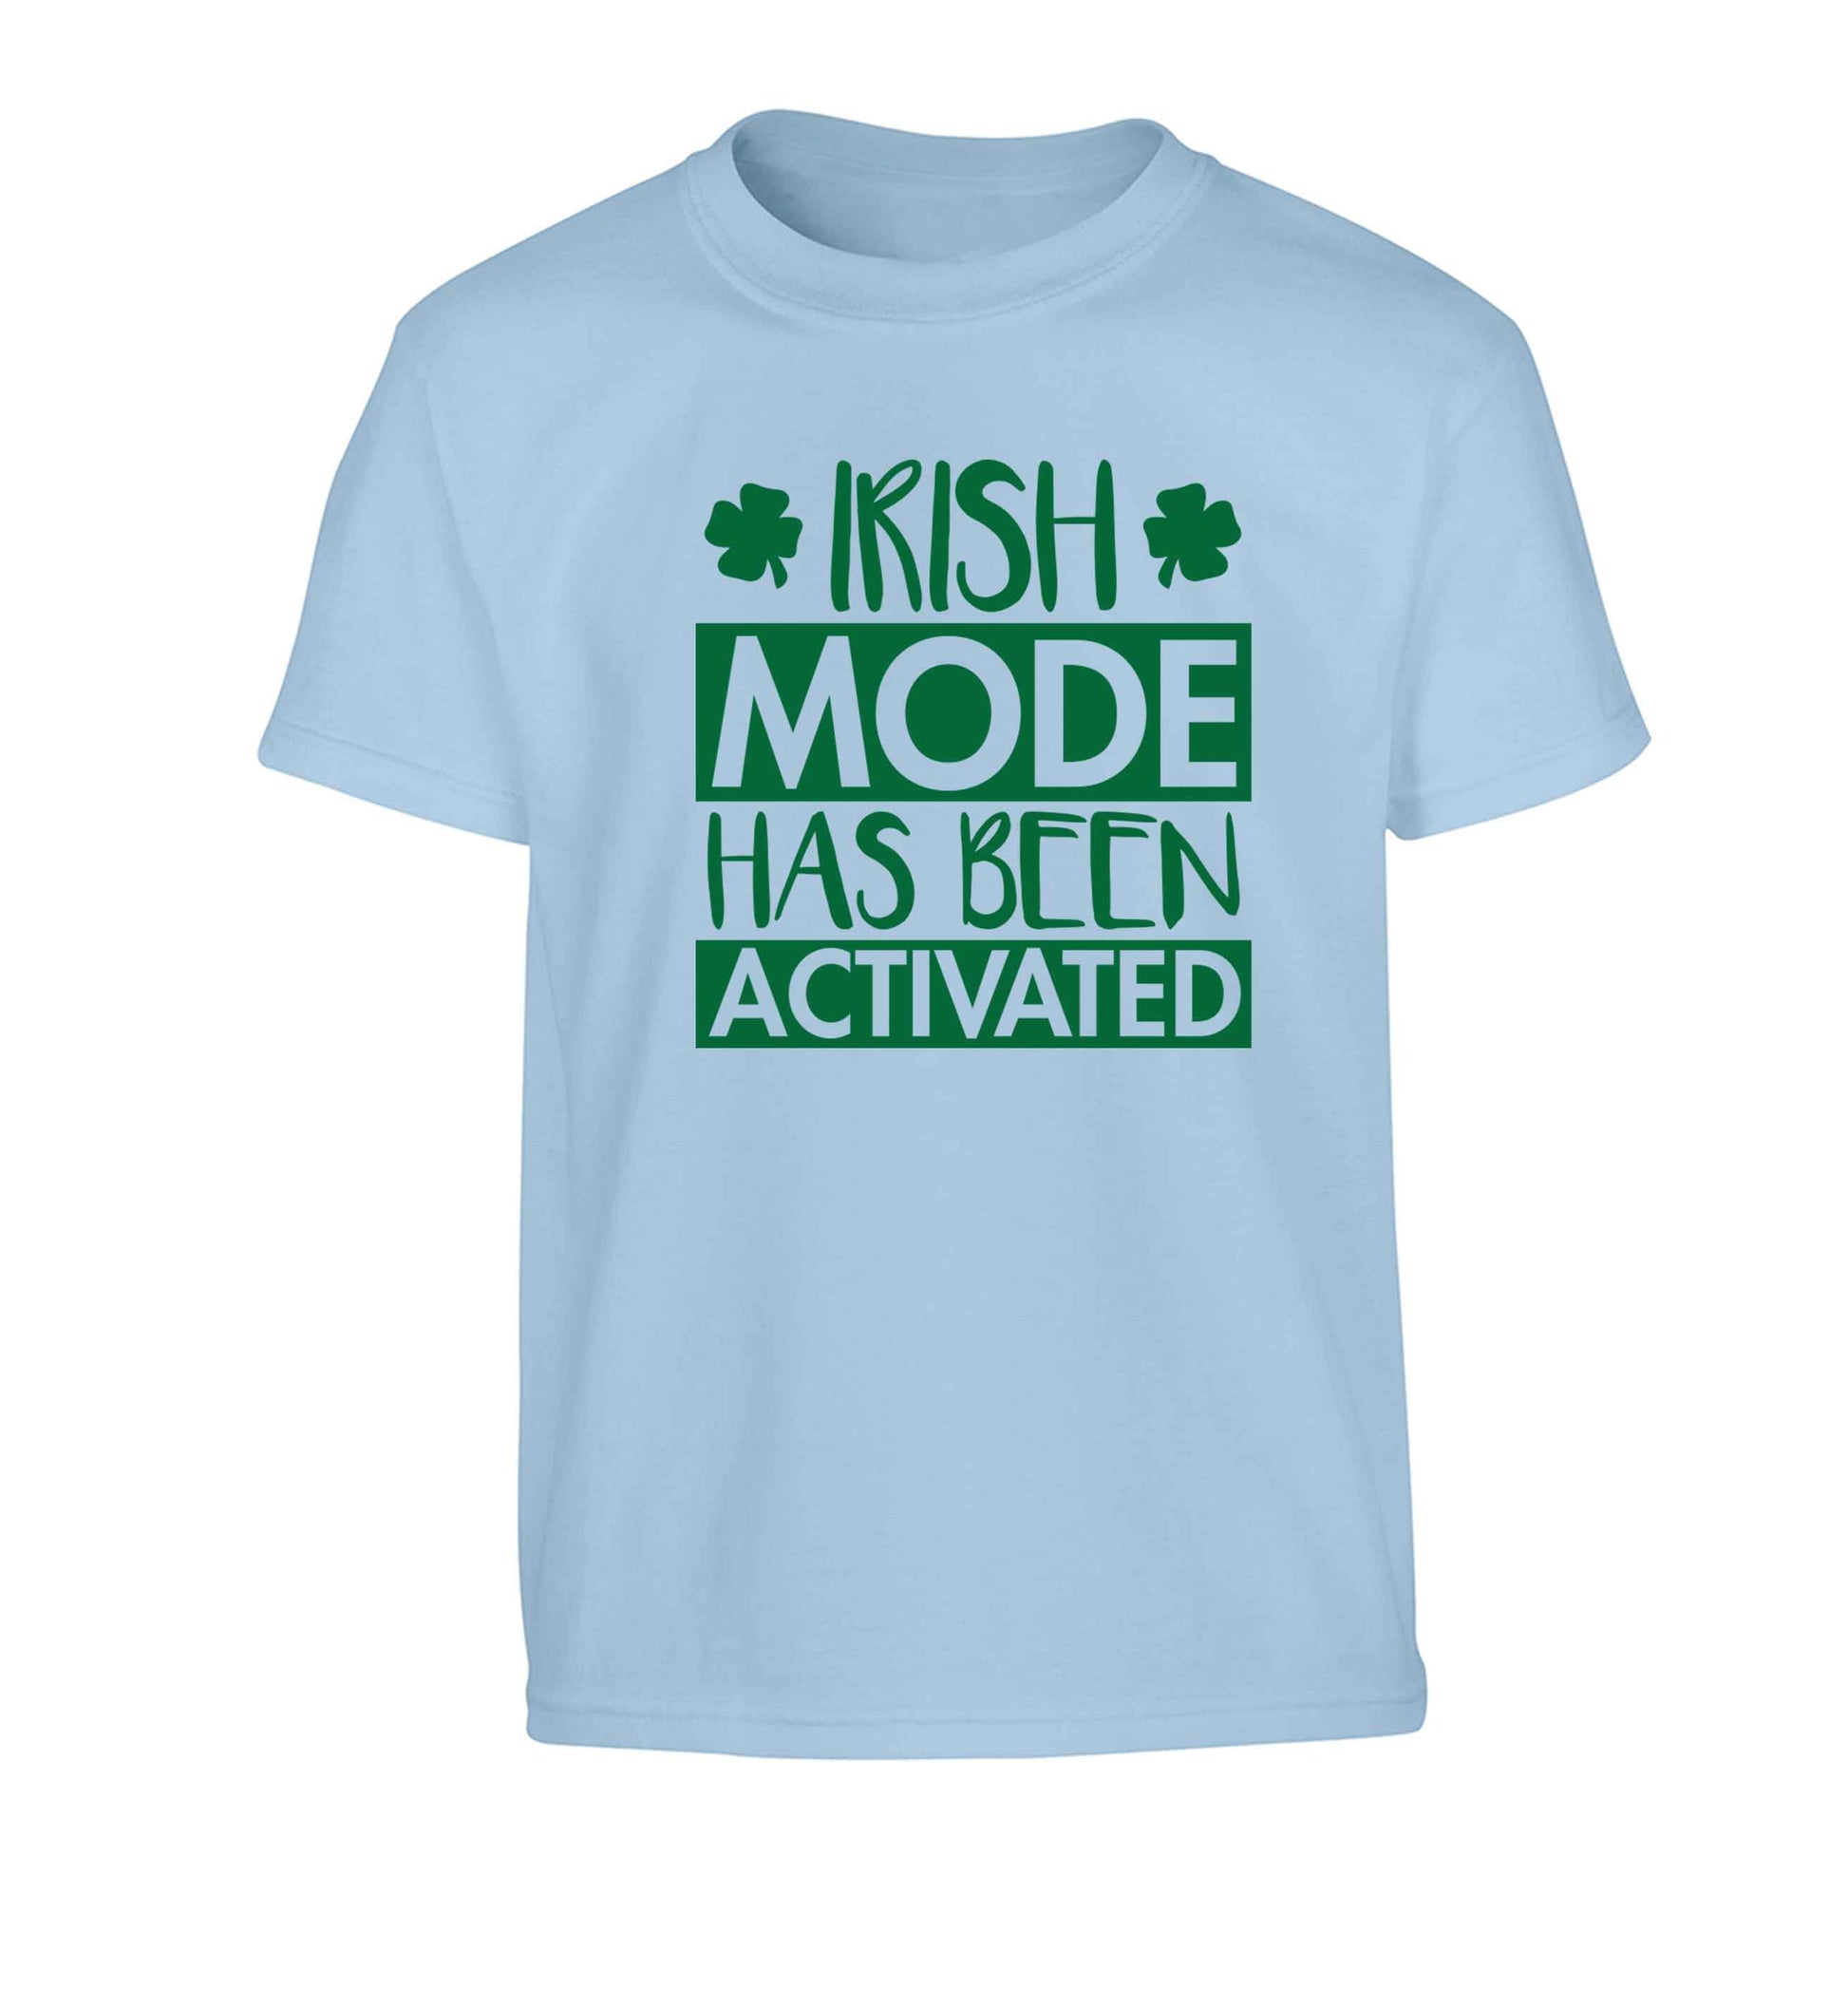 Irish mode has been activated Children's light blue Tshirt 12-13 Years